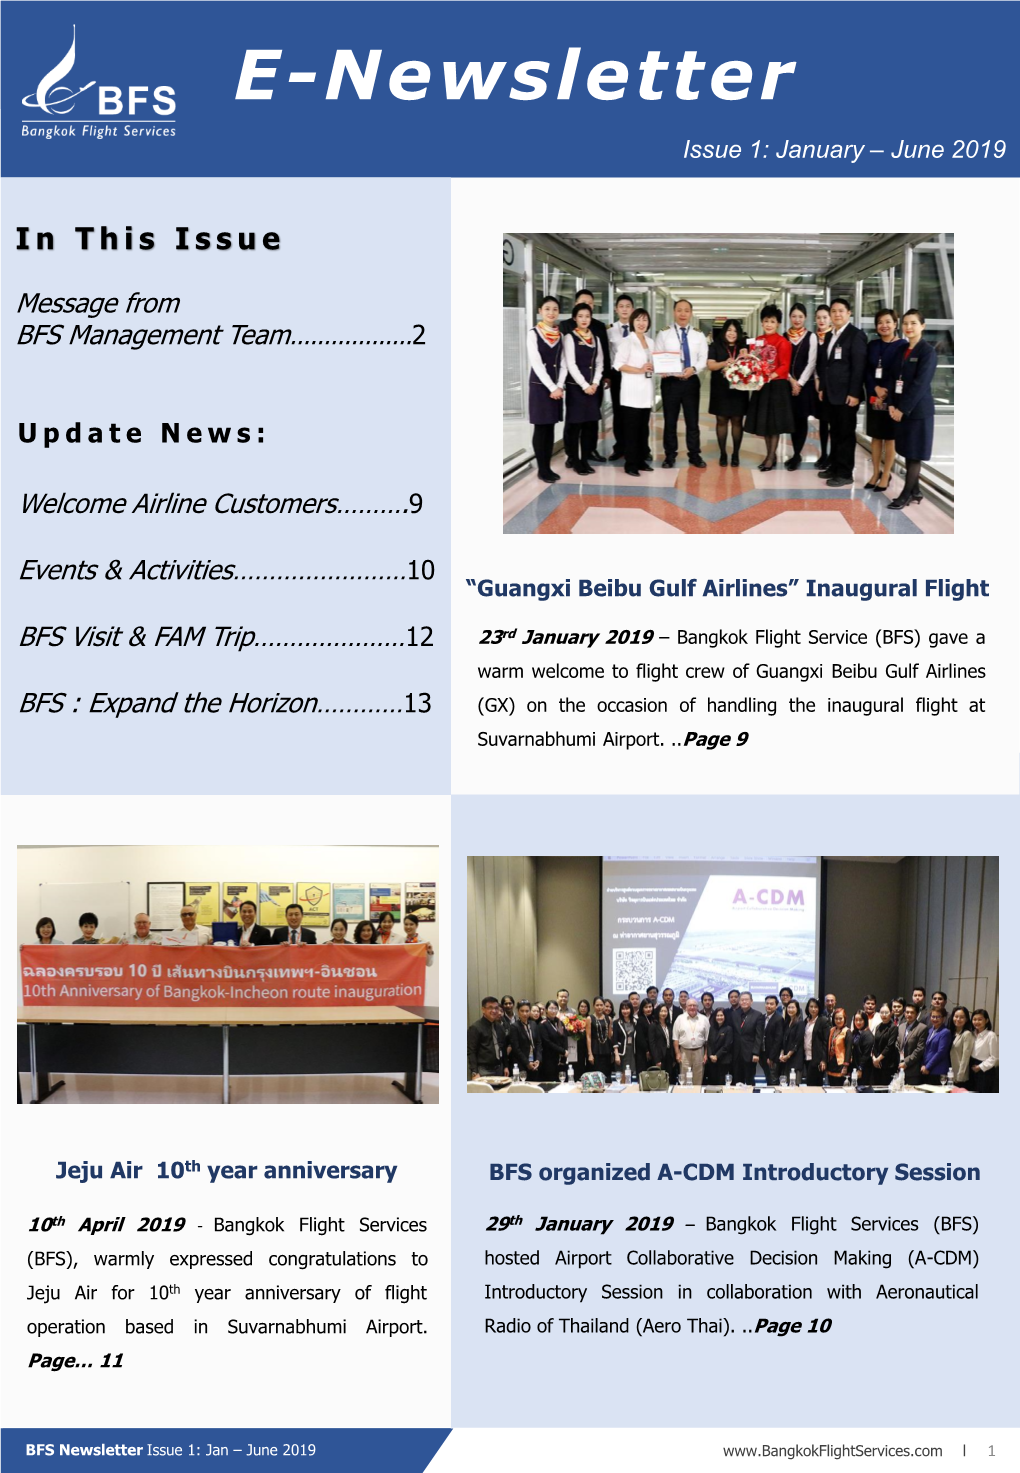 E-Newslettere-Newsletter Issue 1: January – June 2019